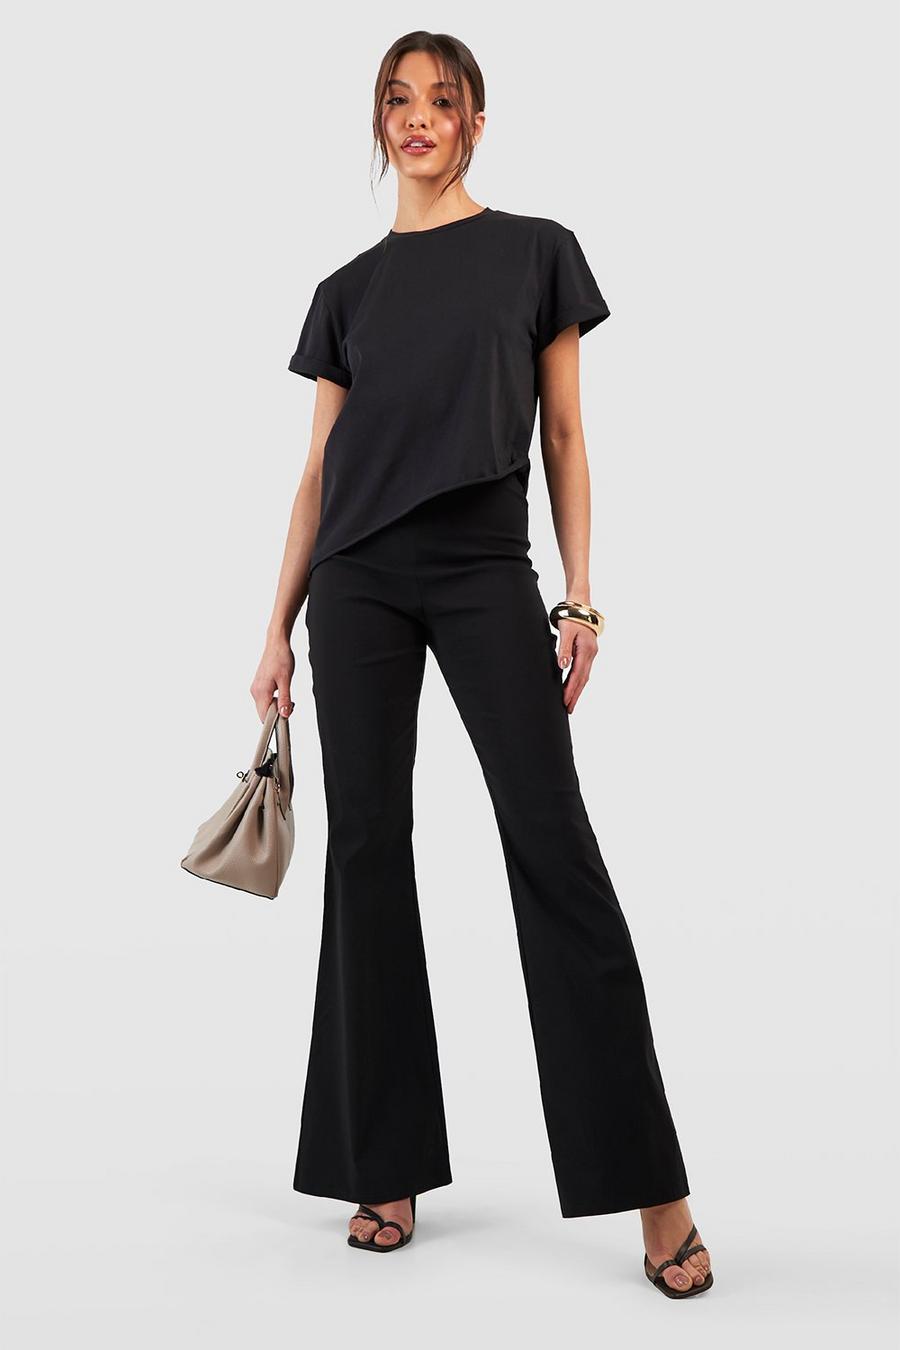 Black Super Stretch Fit & Flare Tailored Trouser